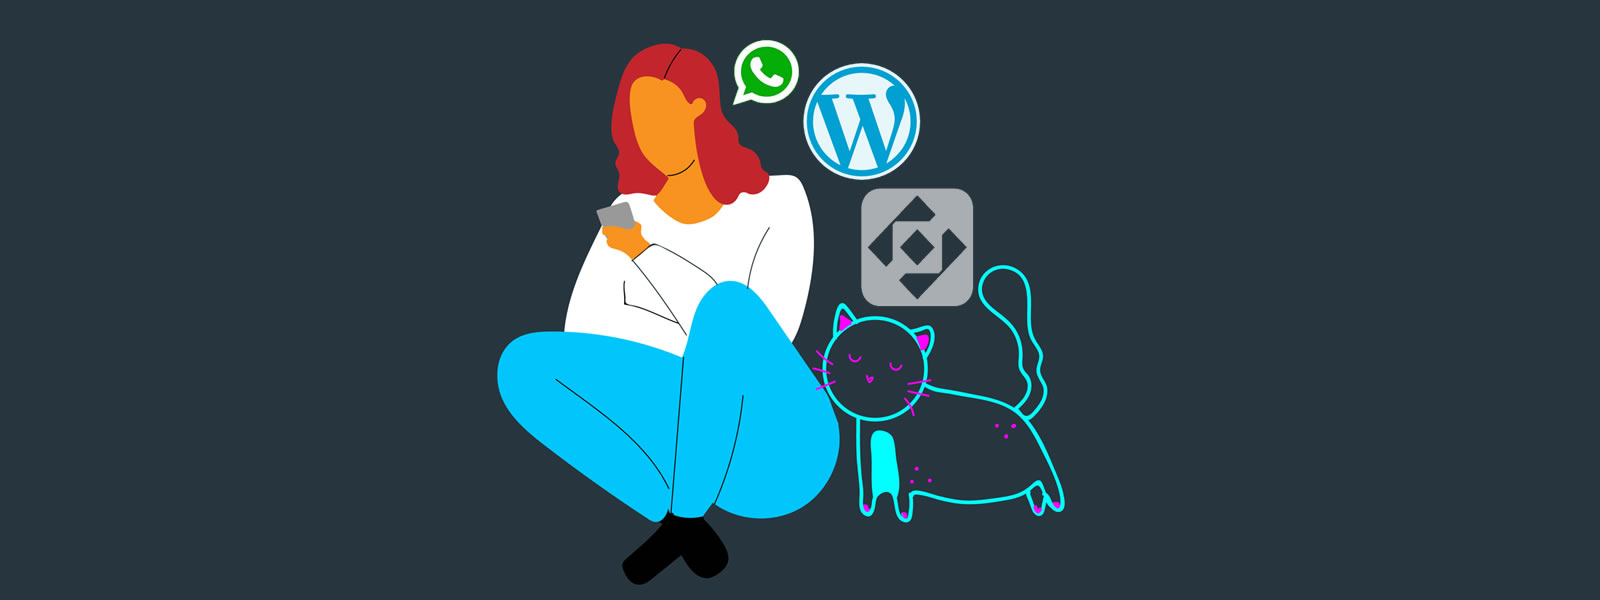 Cómo agregar WhatsApp a tu sitio web hecho en WordPress